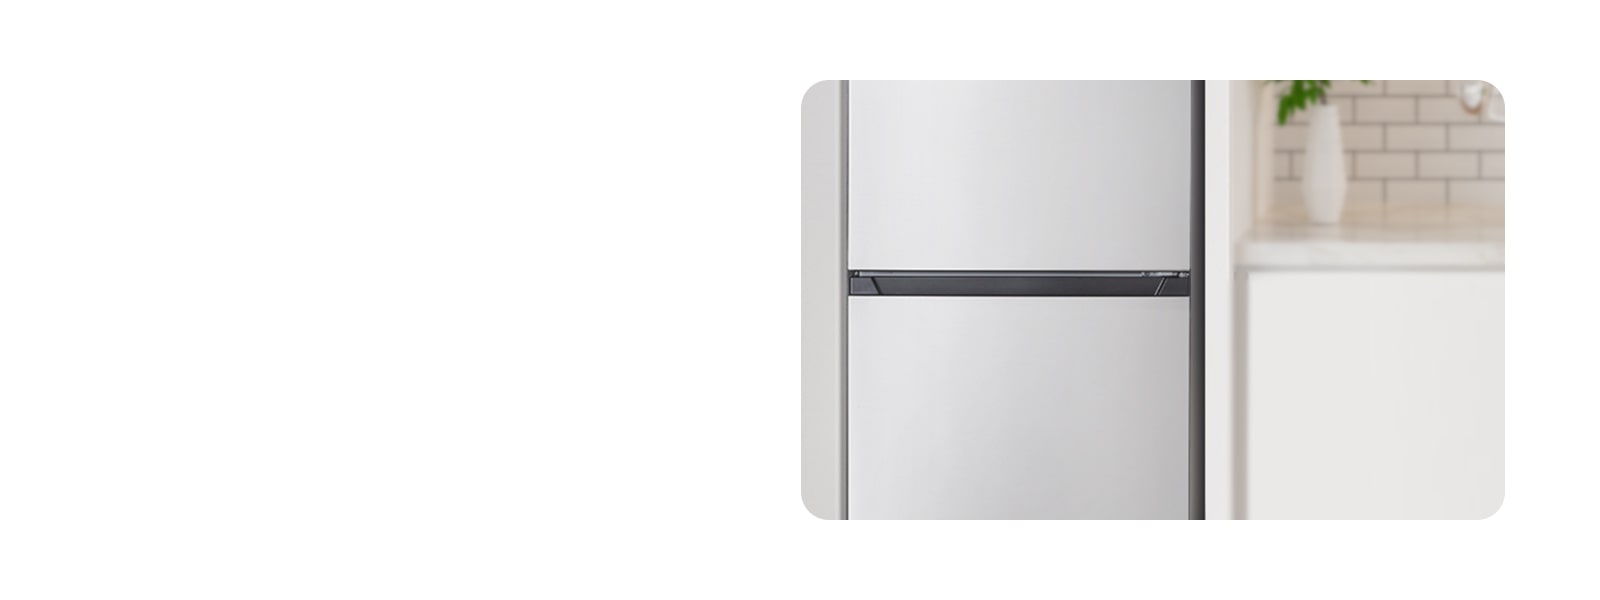 Internt billede, som viser køleskabet